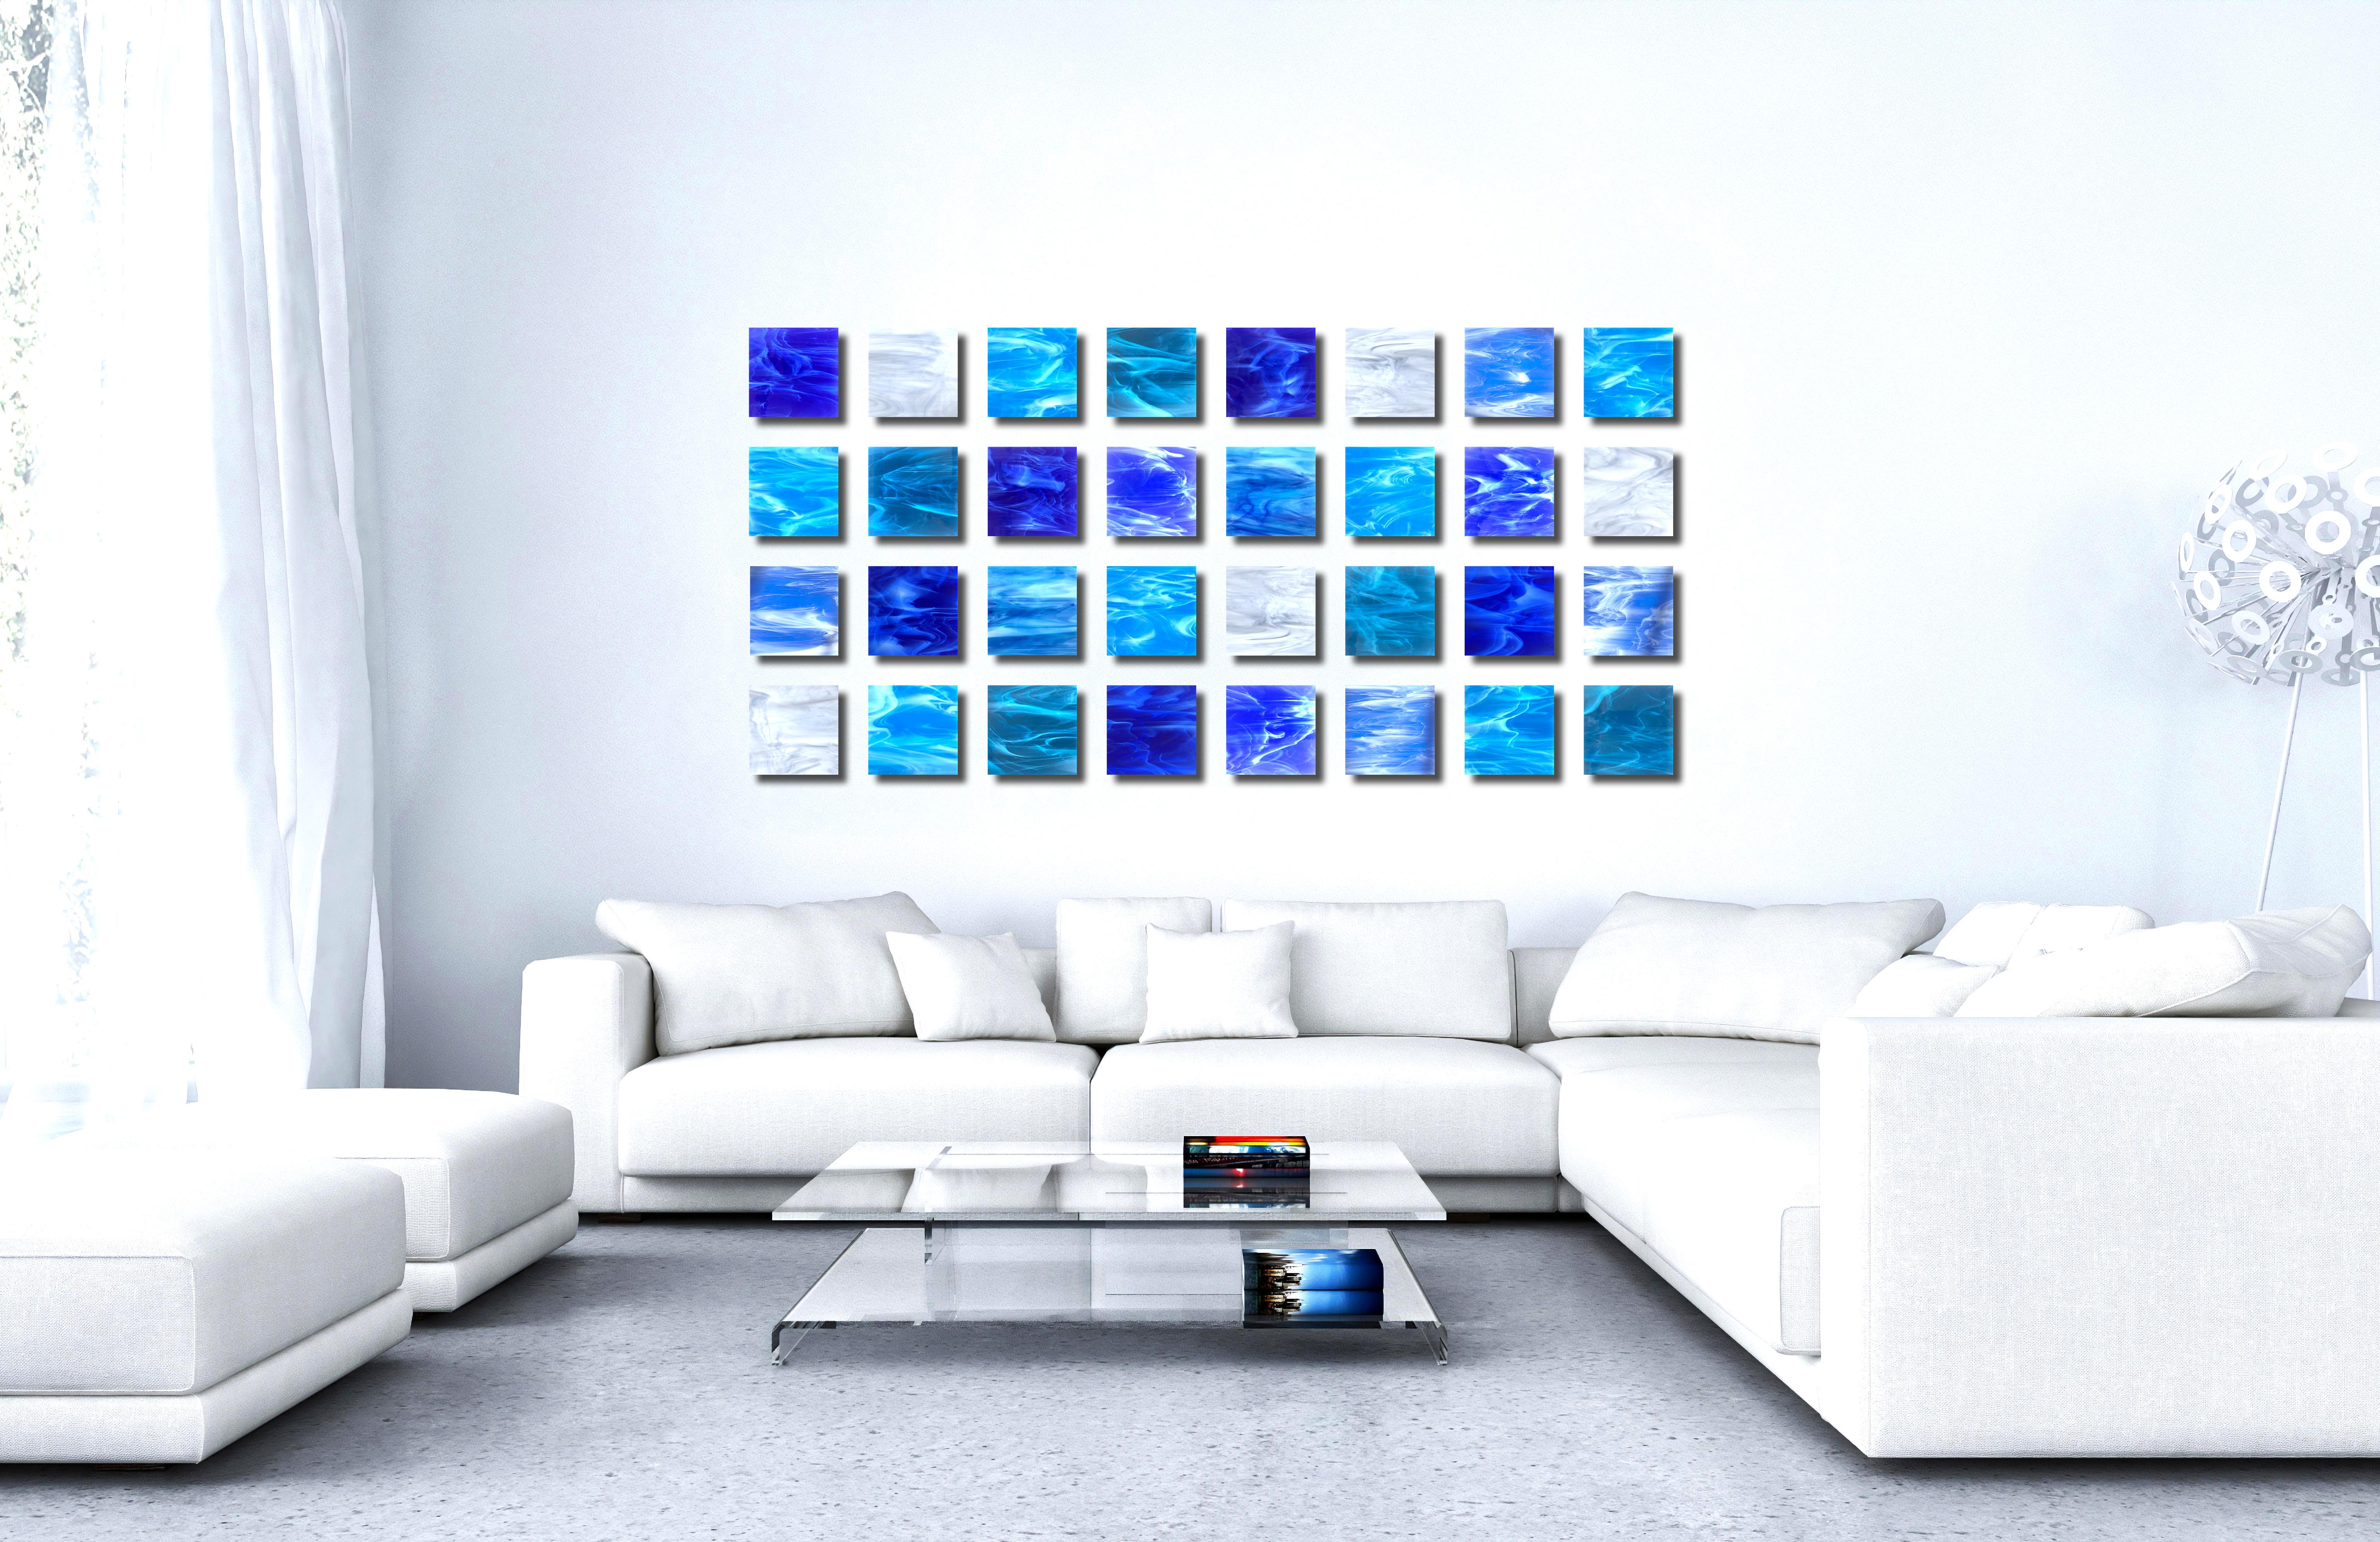 Water, Abstract 3D Original  Glass Wall Sculpture, Modern Design  - Blue Abstract Sculpture by Karo Martirosyan